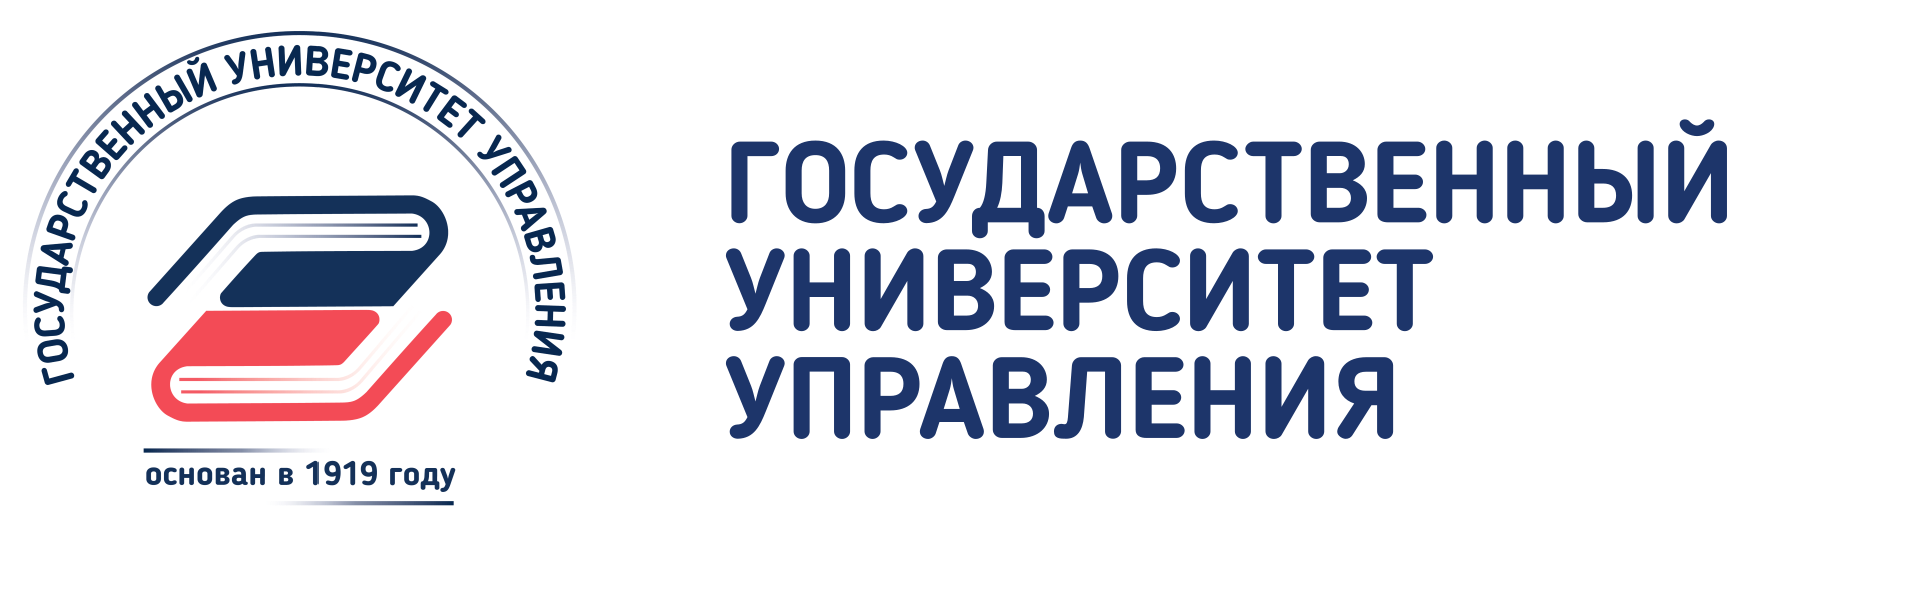 Логотип московский городской университет на прозрачном фоне фото